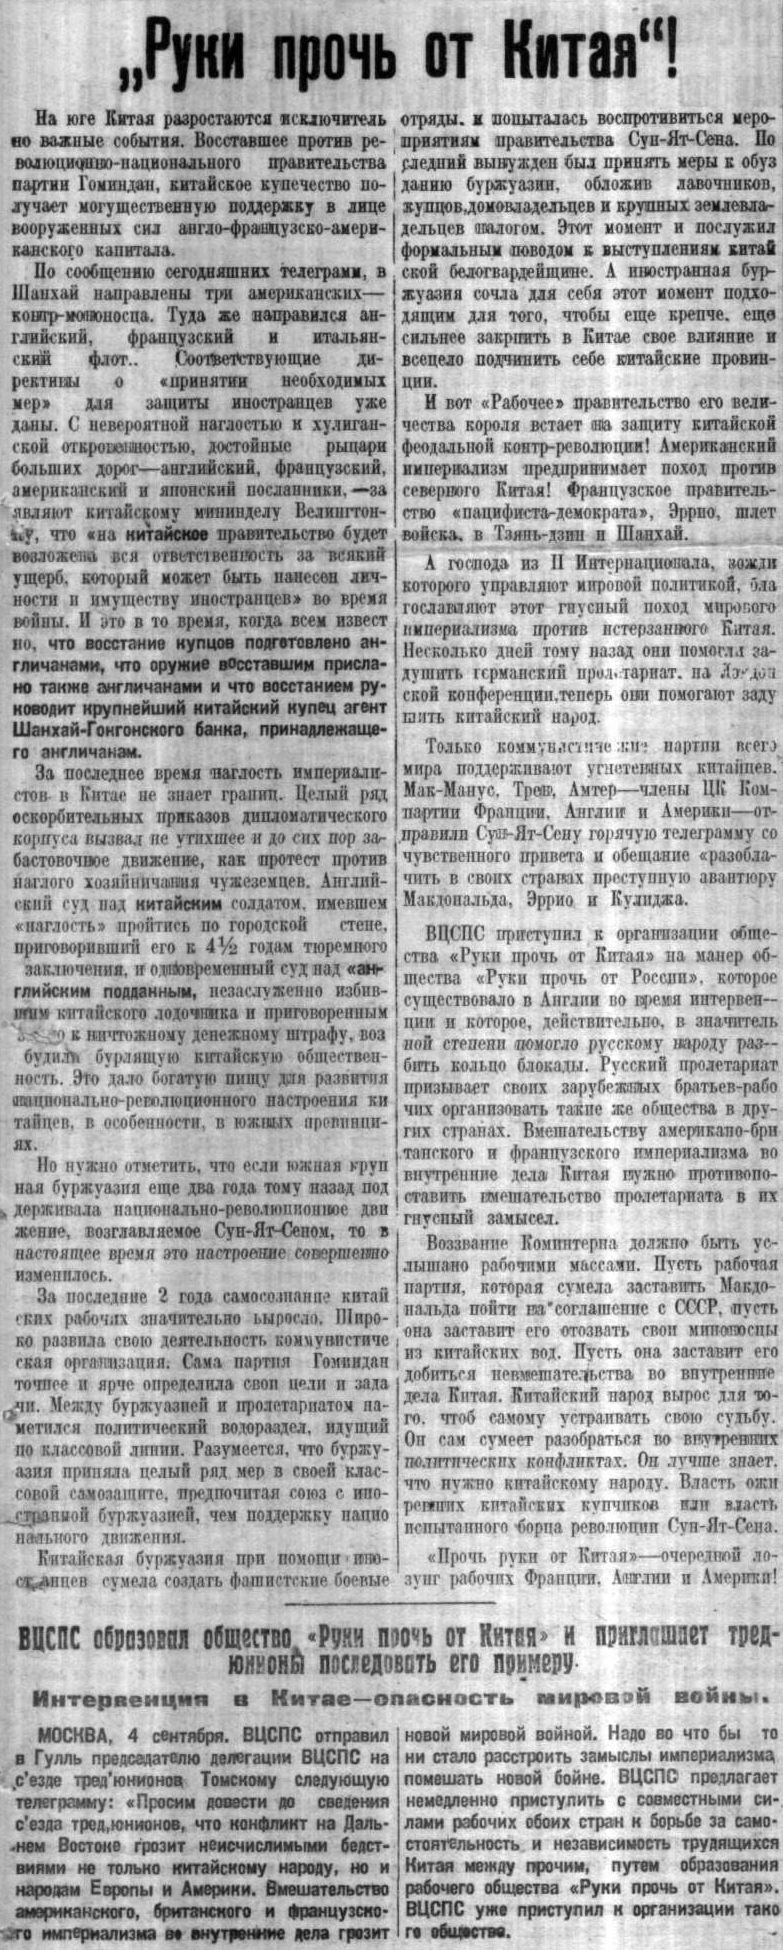 Статья в газете Советская Сибирь от 6 сентября 1924 г. о образовании общества Руки прочь от Китая